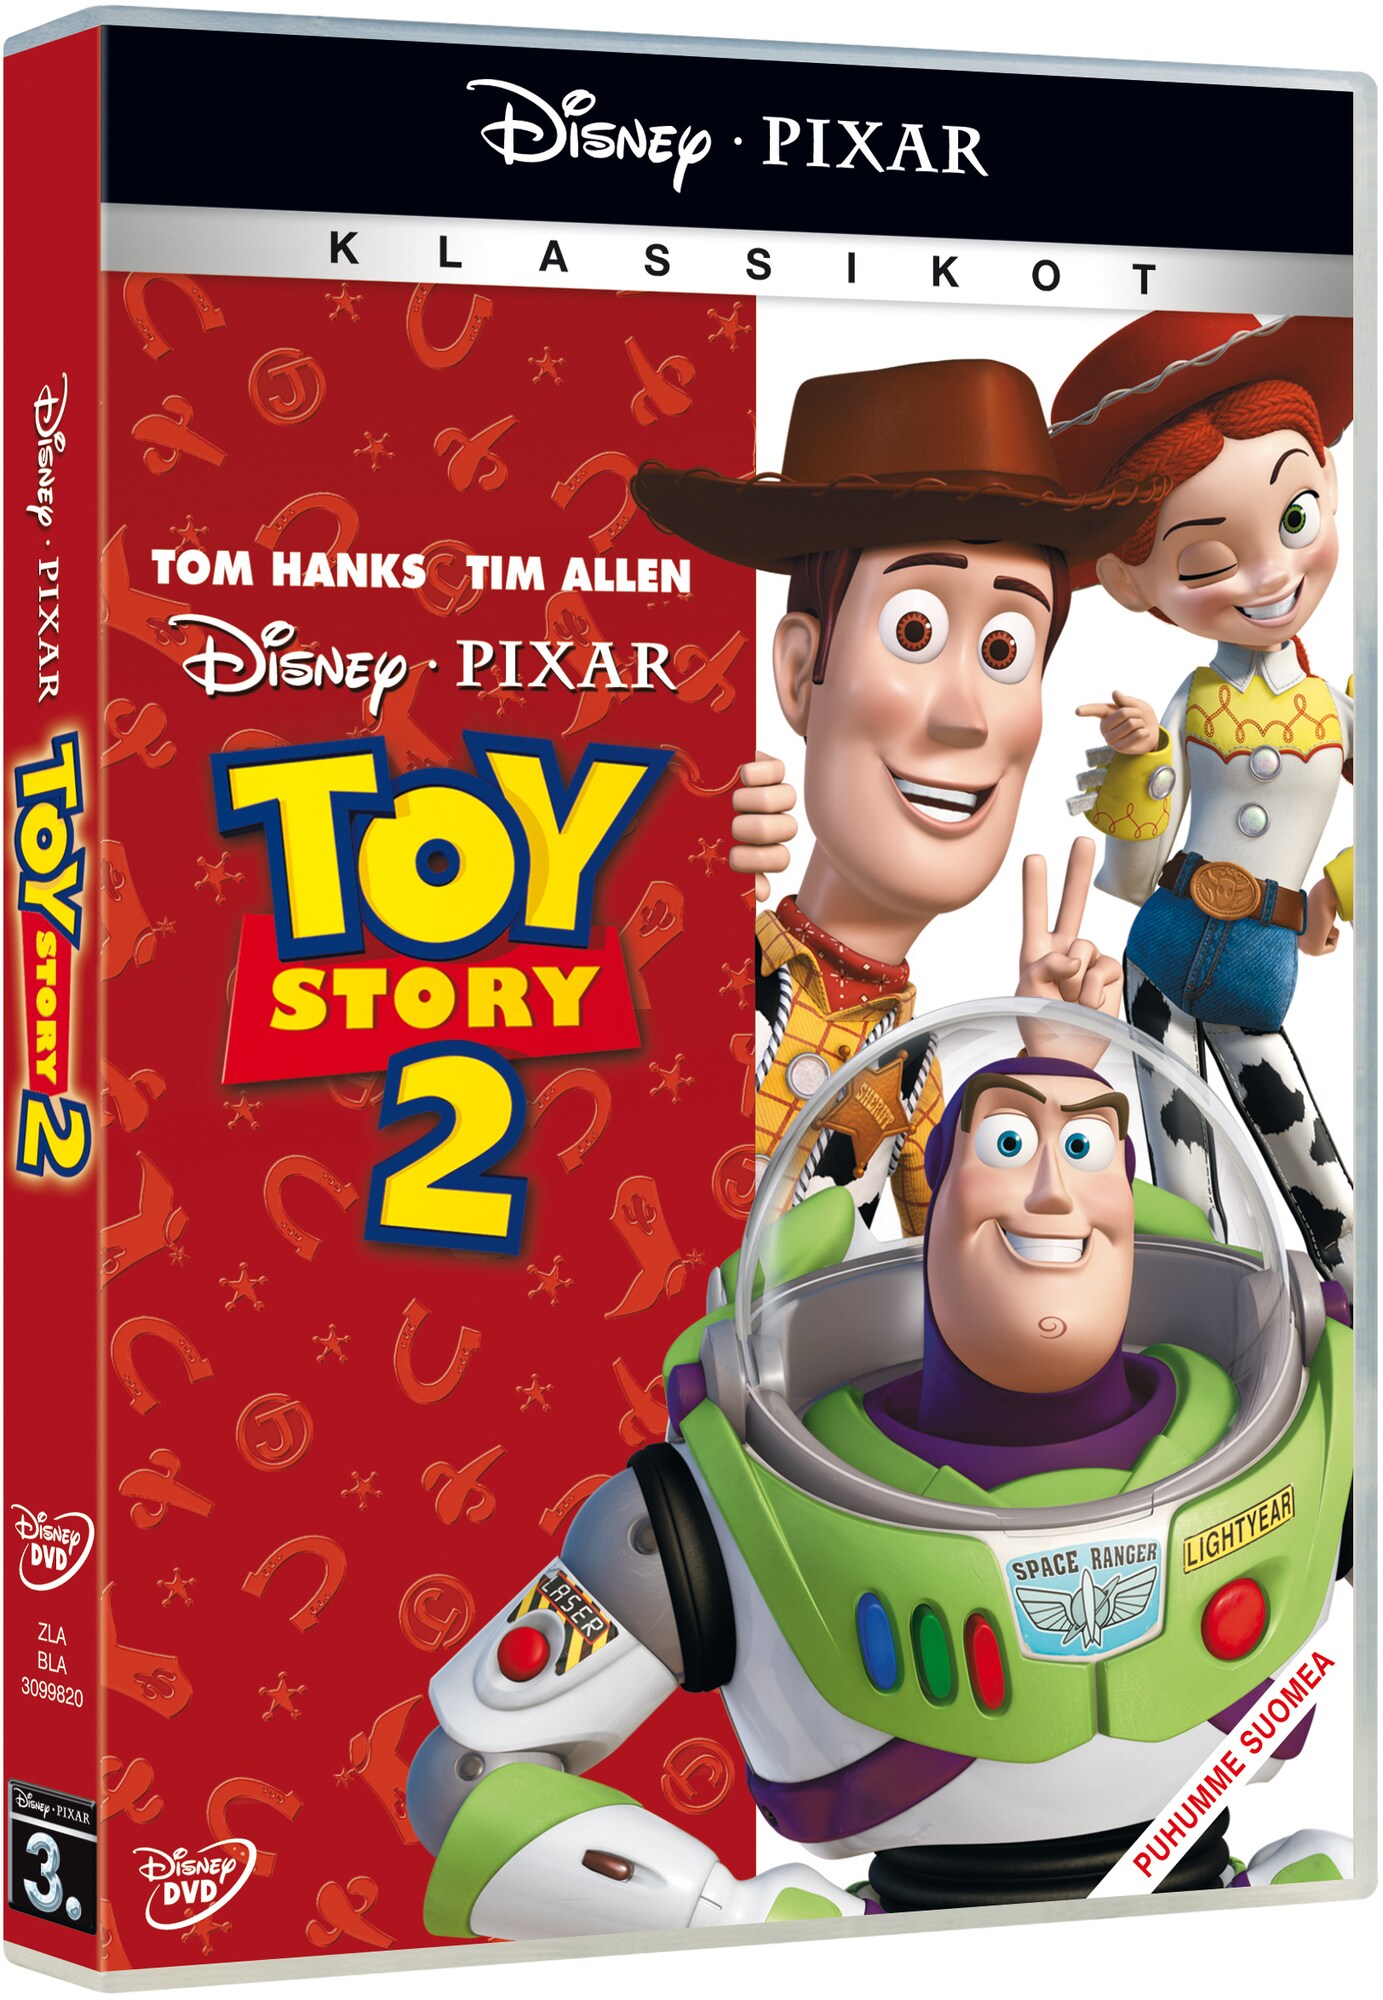 Toy Story 2 - Leluelämää 2 (DVD) - Gigantti verkkokauppa